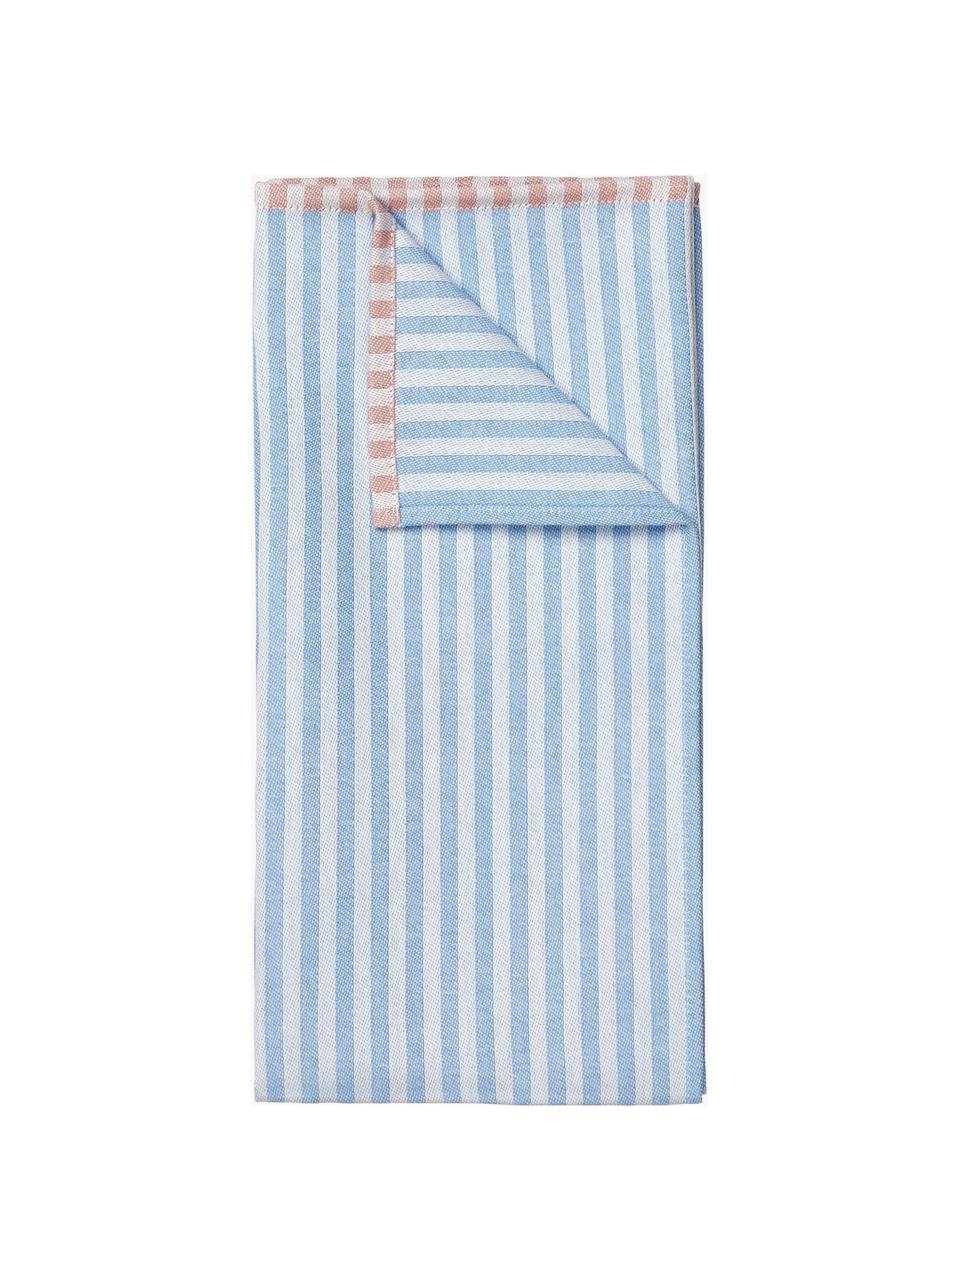 Ręcznik kuchenny z bawełny Lamel, 2 szt., 100% bawełna, Biały, niebieski, brudny różowy, S 50 x D 70 cm